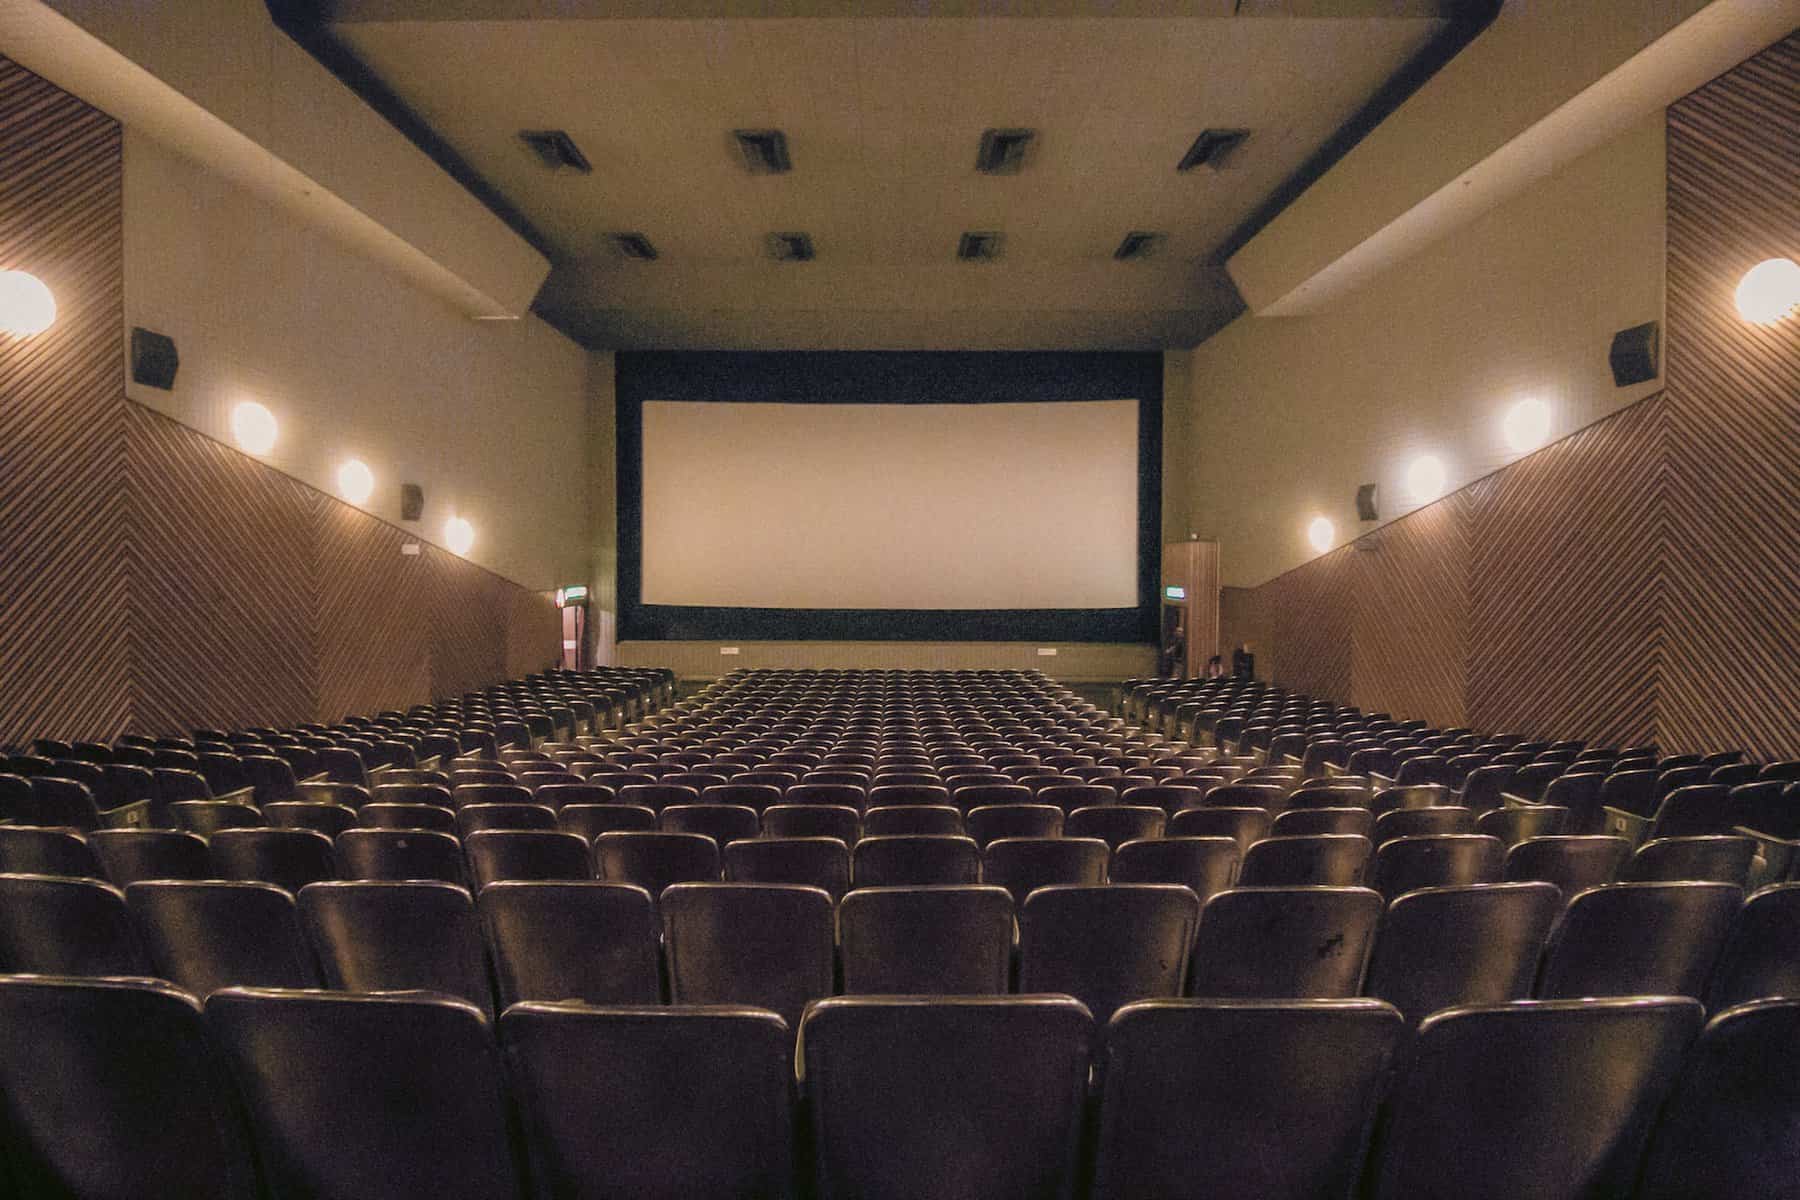 sala cinema